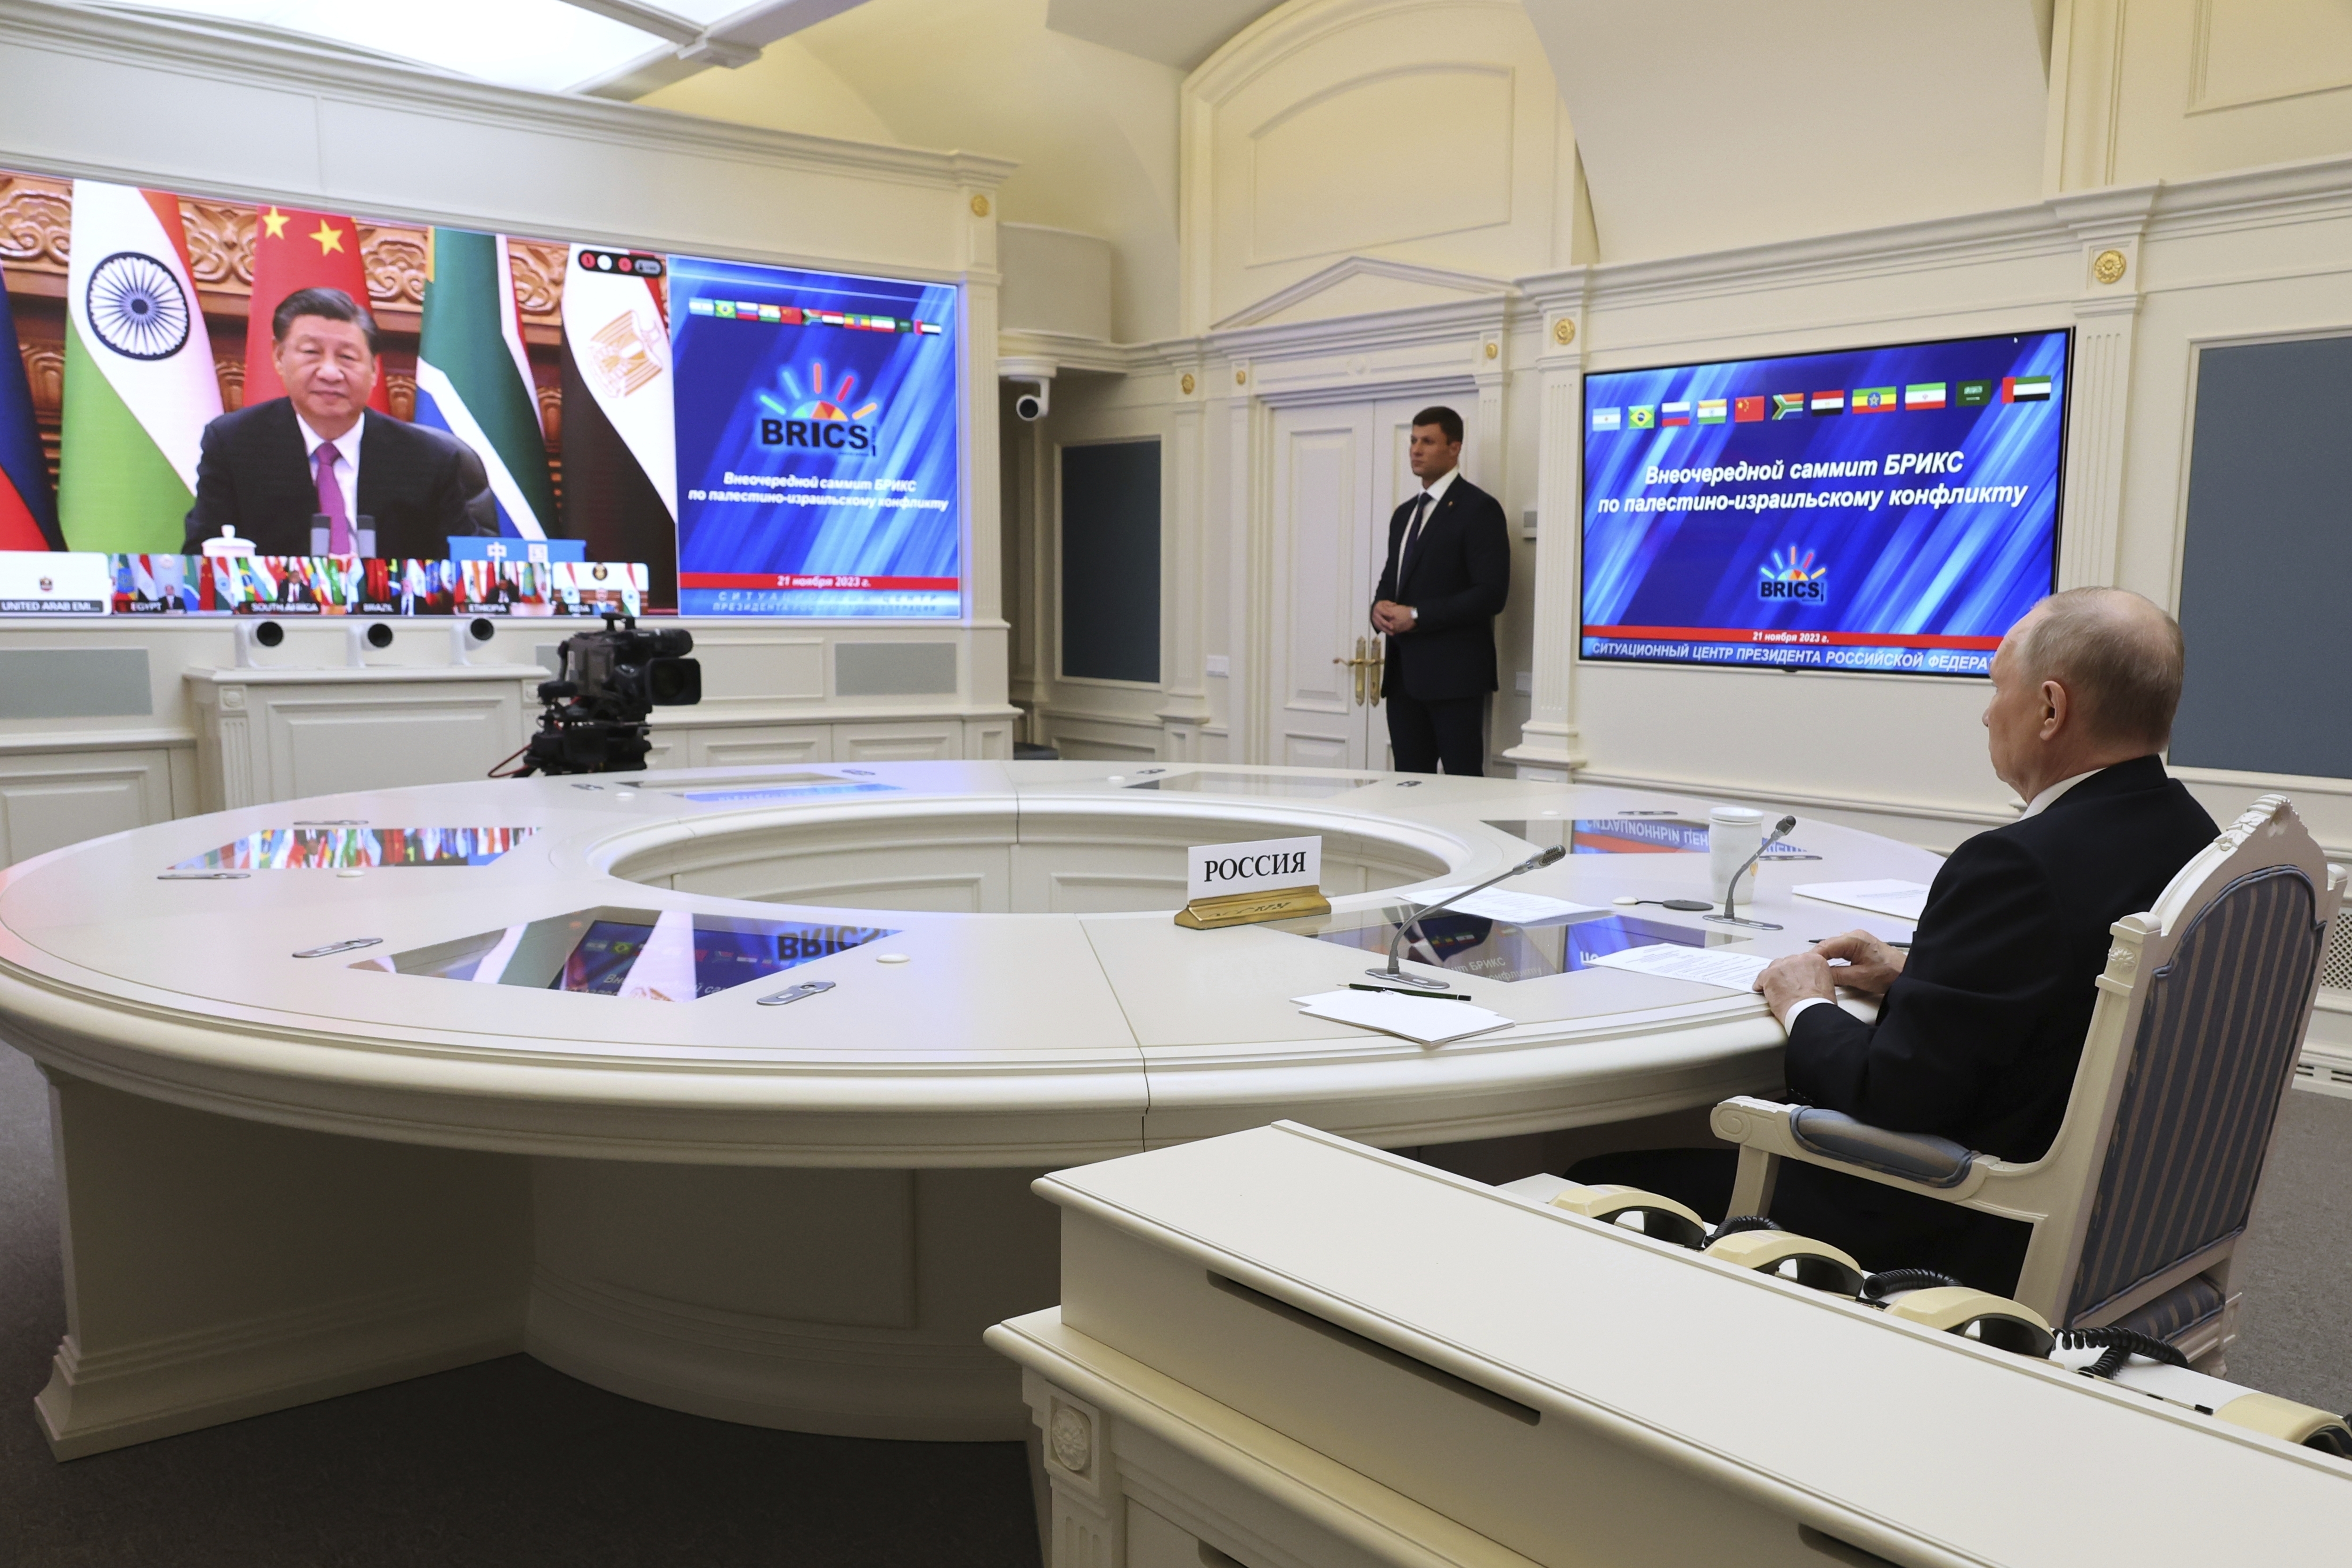 Der russische Präsident Wladimir Putin nimmt per Videokonferenz an einem außerordentlichen BRICS-Gipfel teil, während Chinas Präsident Xi Jinping auf dem Bildschirm zu sehen ist.